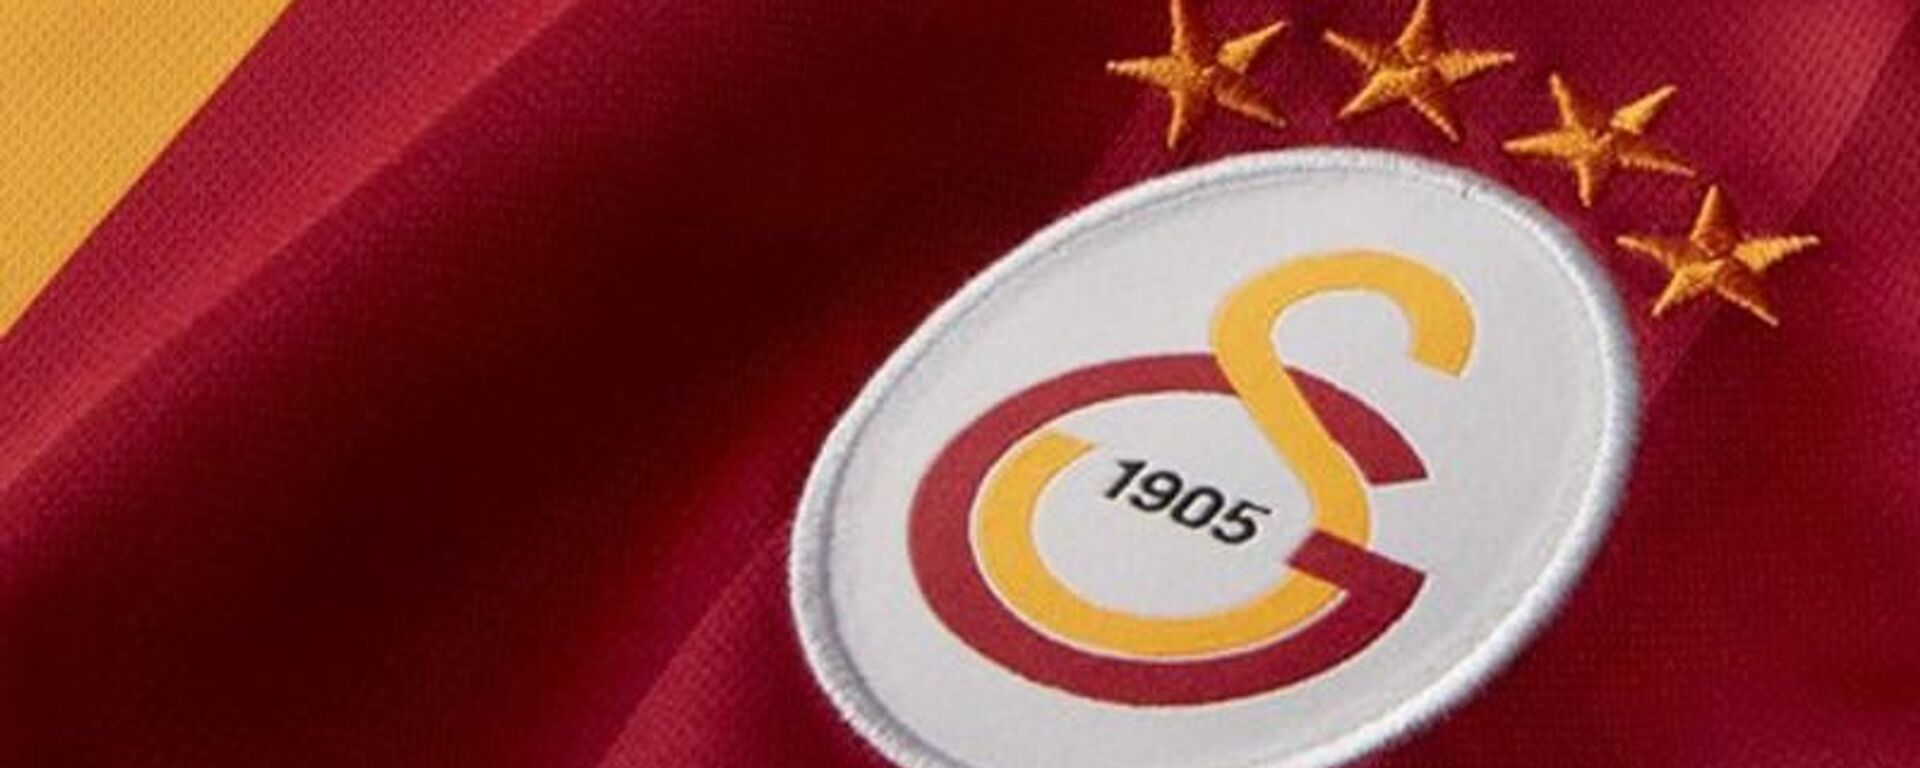 Galatasaray’da yeni yönetimin sosyal medya kararı - Sputnik Türkiye, 1920, 05.09.2021